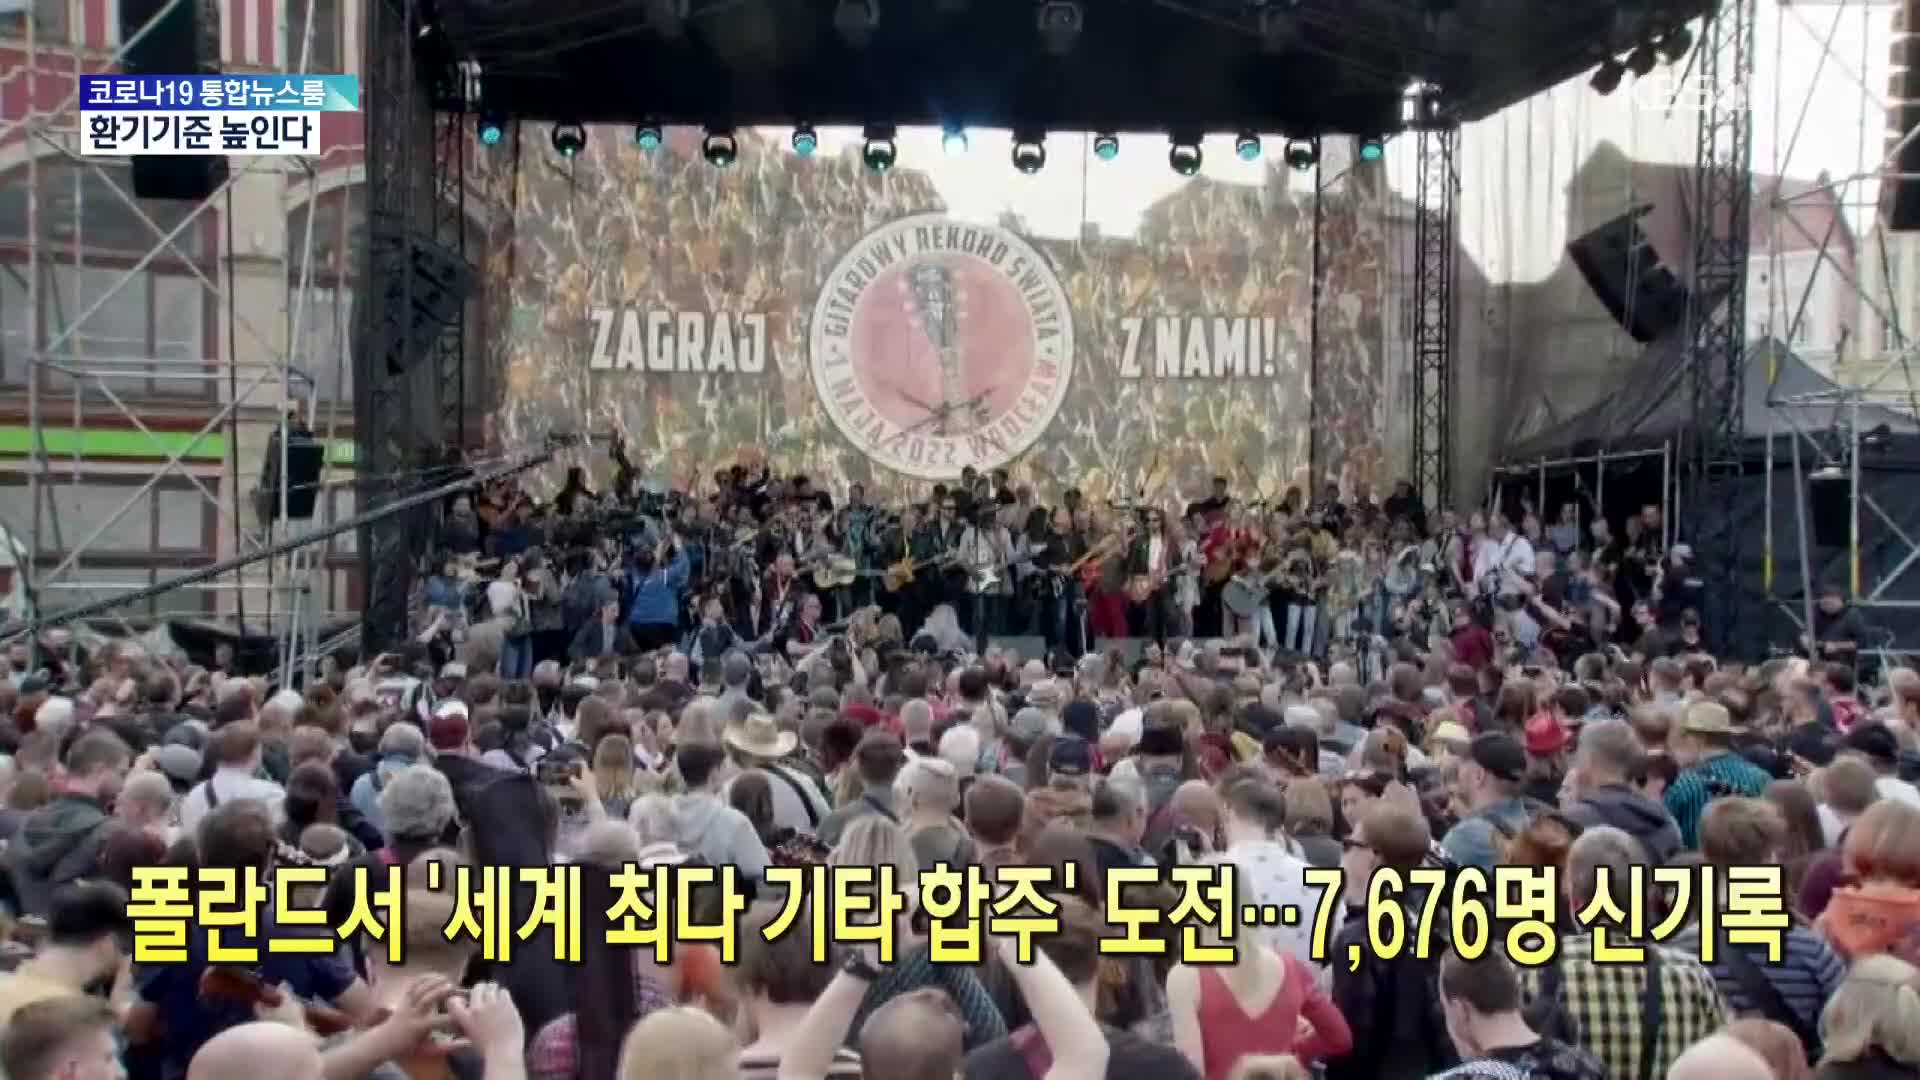 [톡톡 지구촌] 폴란드서 ‘세계 최다 기타 합주’ 도전…7,676명 신기록